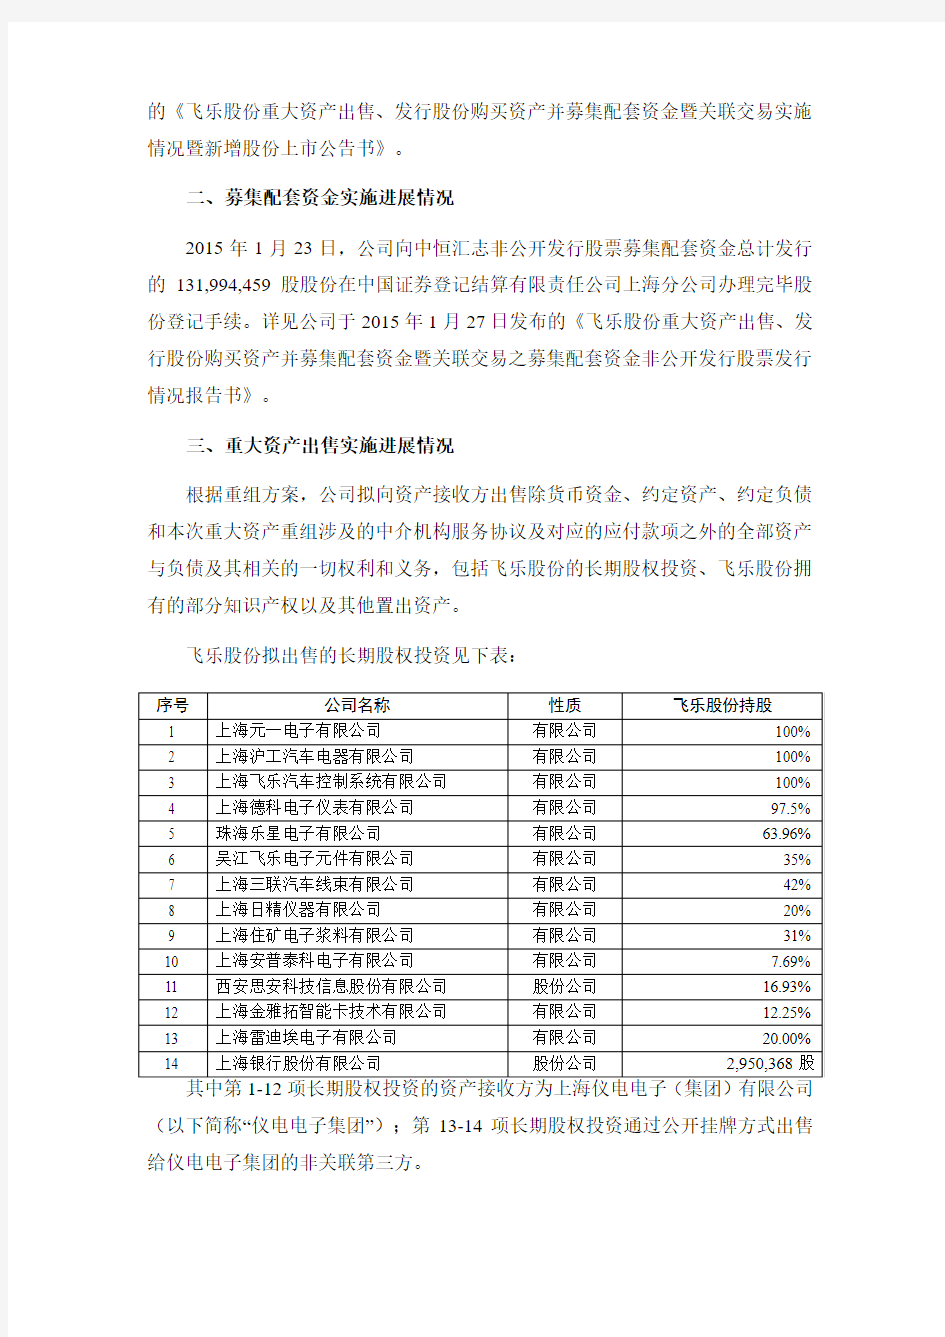 上海飞乐股份有限公司 关于重大资产出售、发行股份购买 …